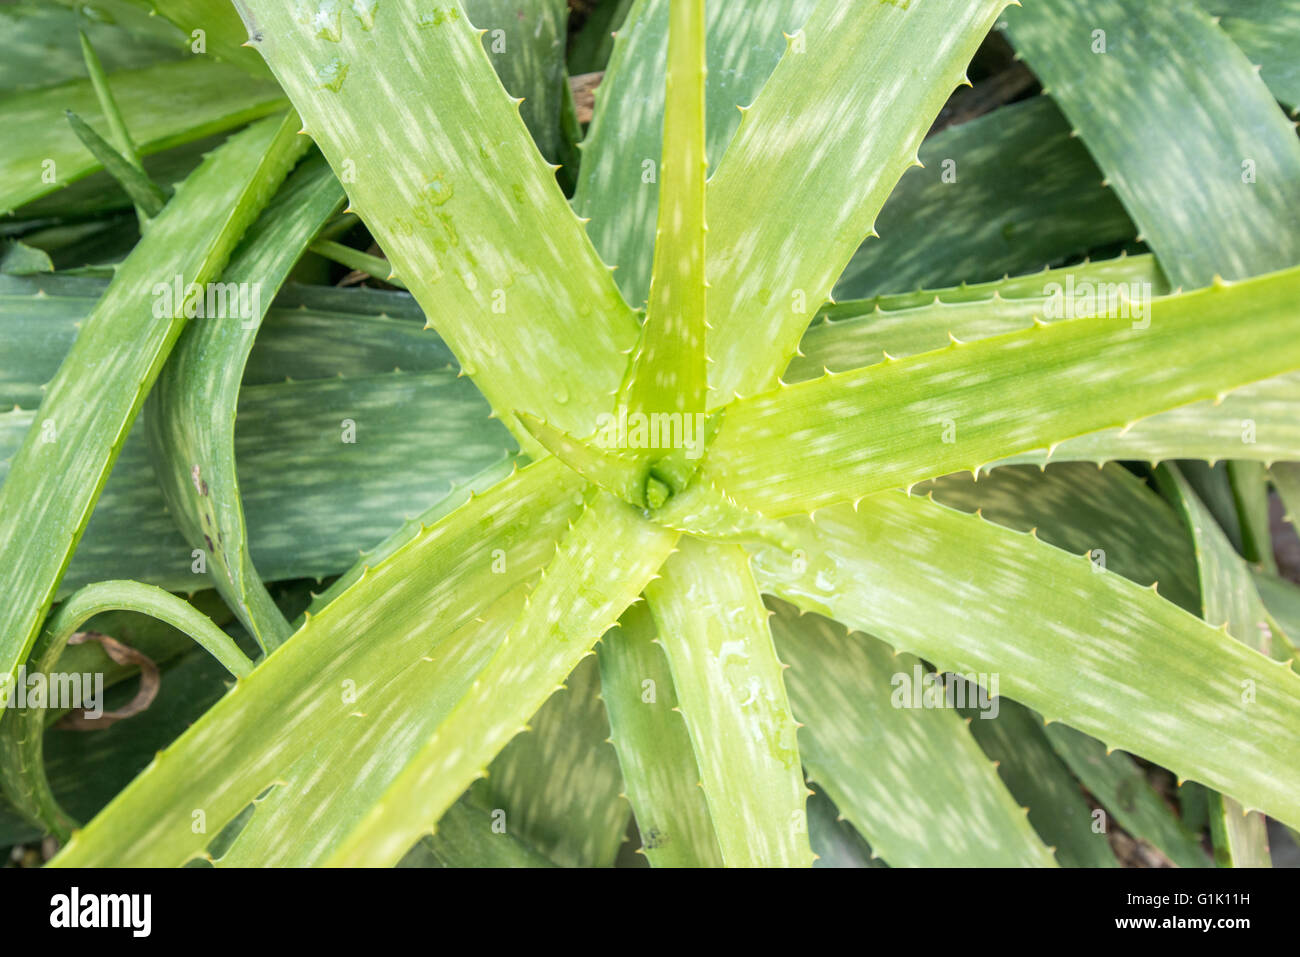 Vista anterior del abrir hojas de una planta de Aloe Foto de stock